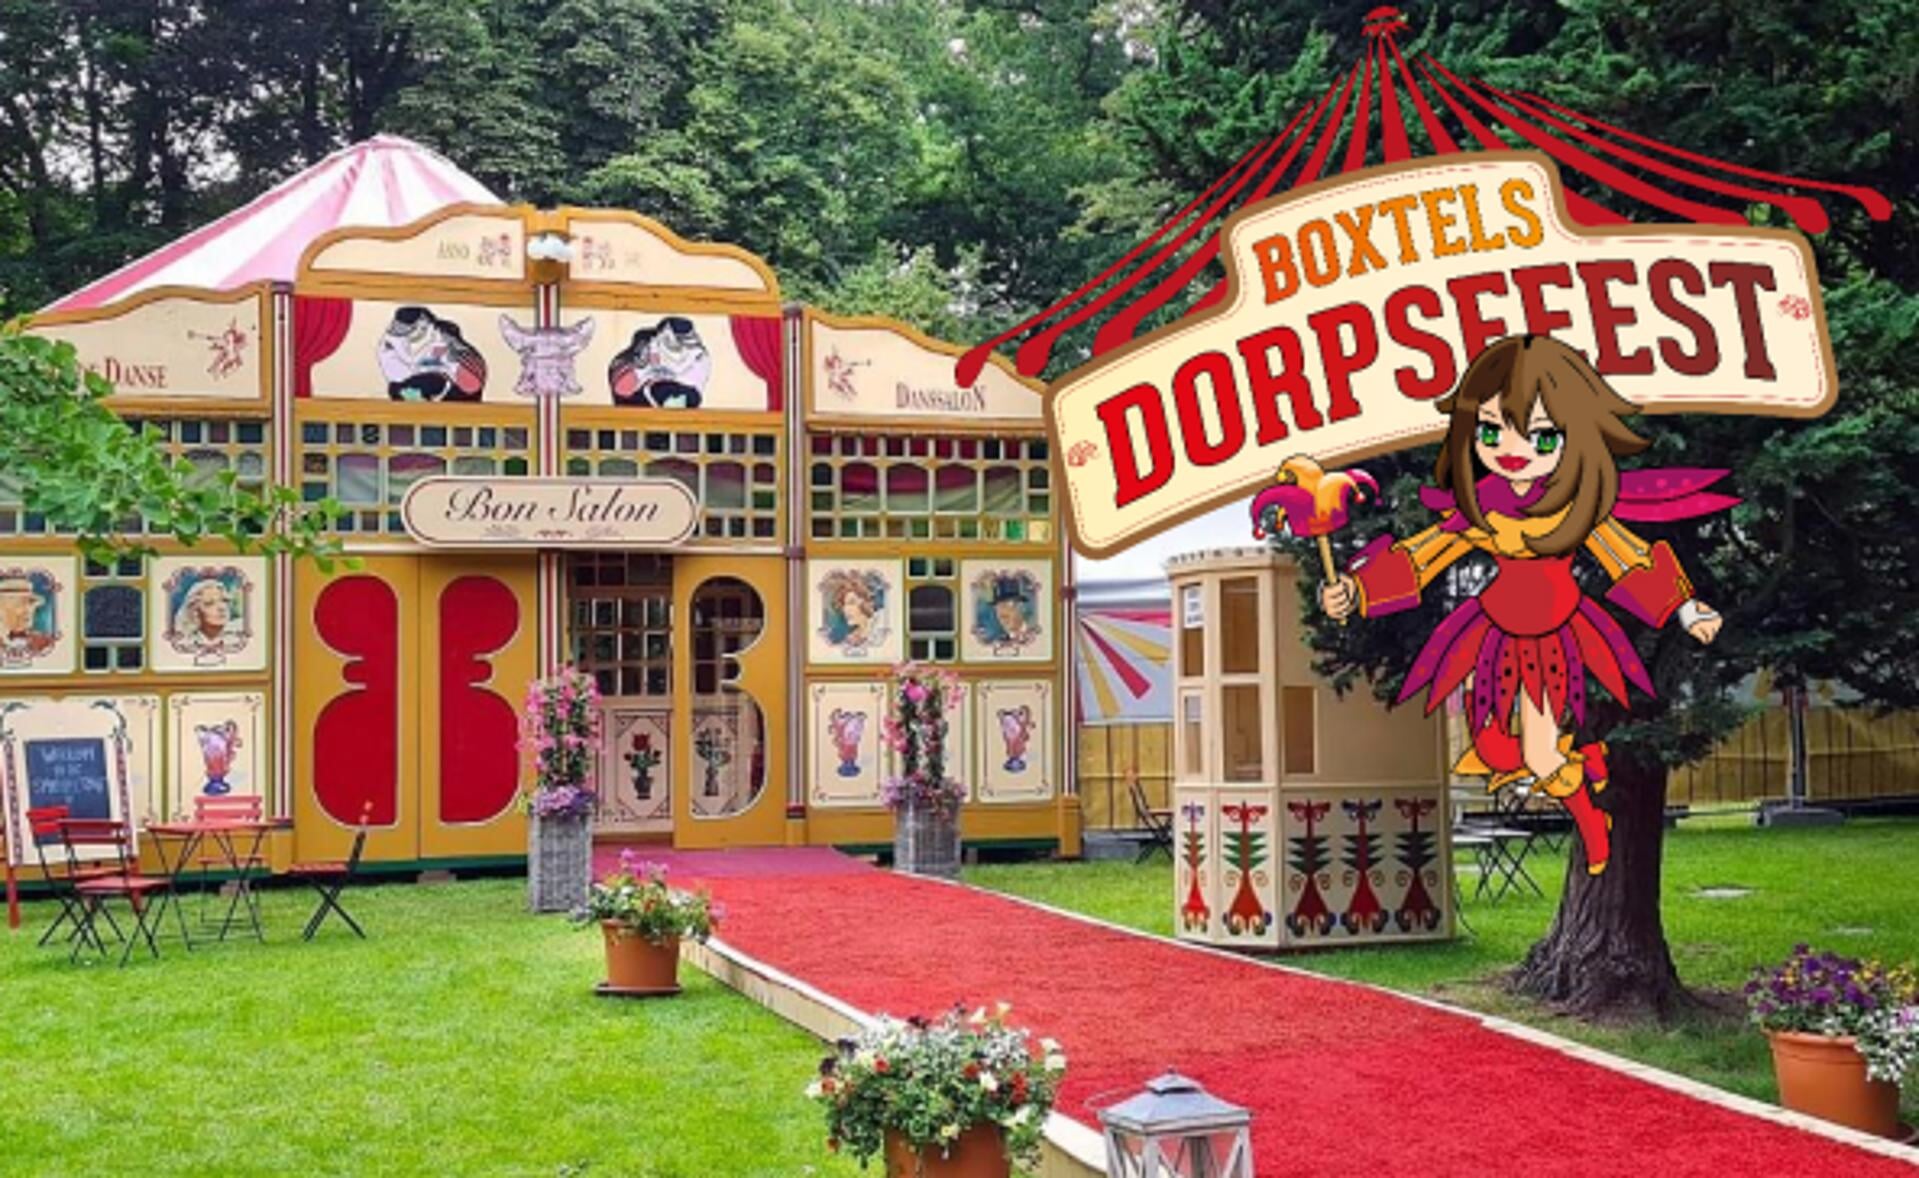 Het harlekijntje Bonnie van Boxtel is de mascotte van het Boxtels Dorpsfeest.